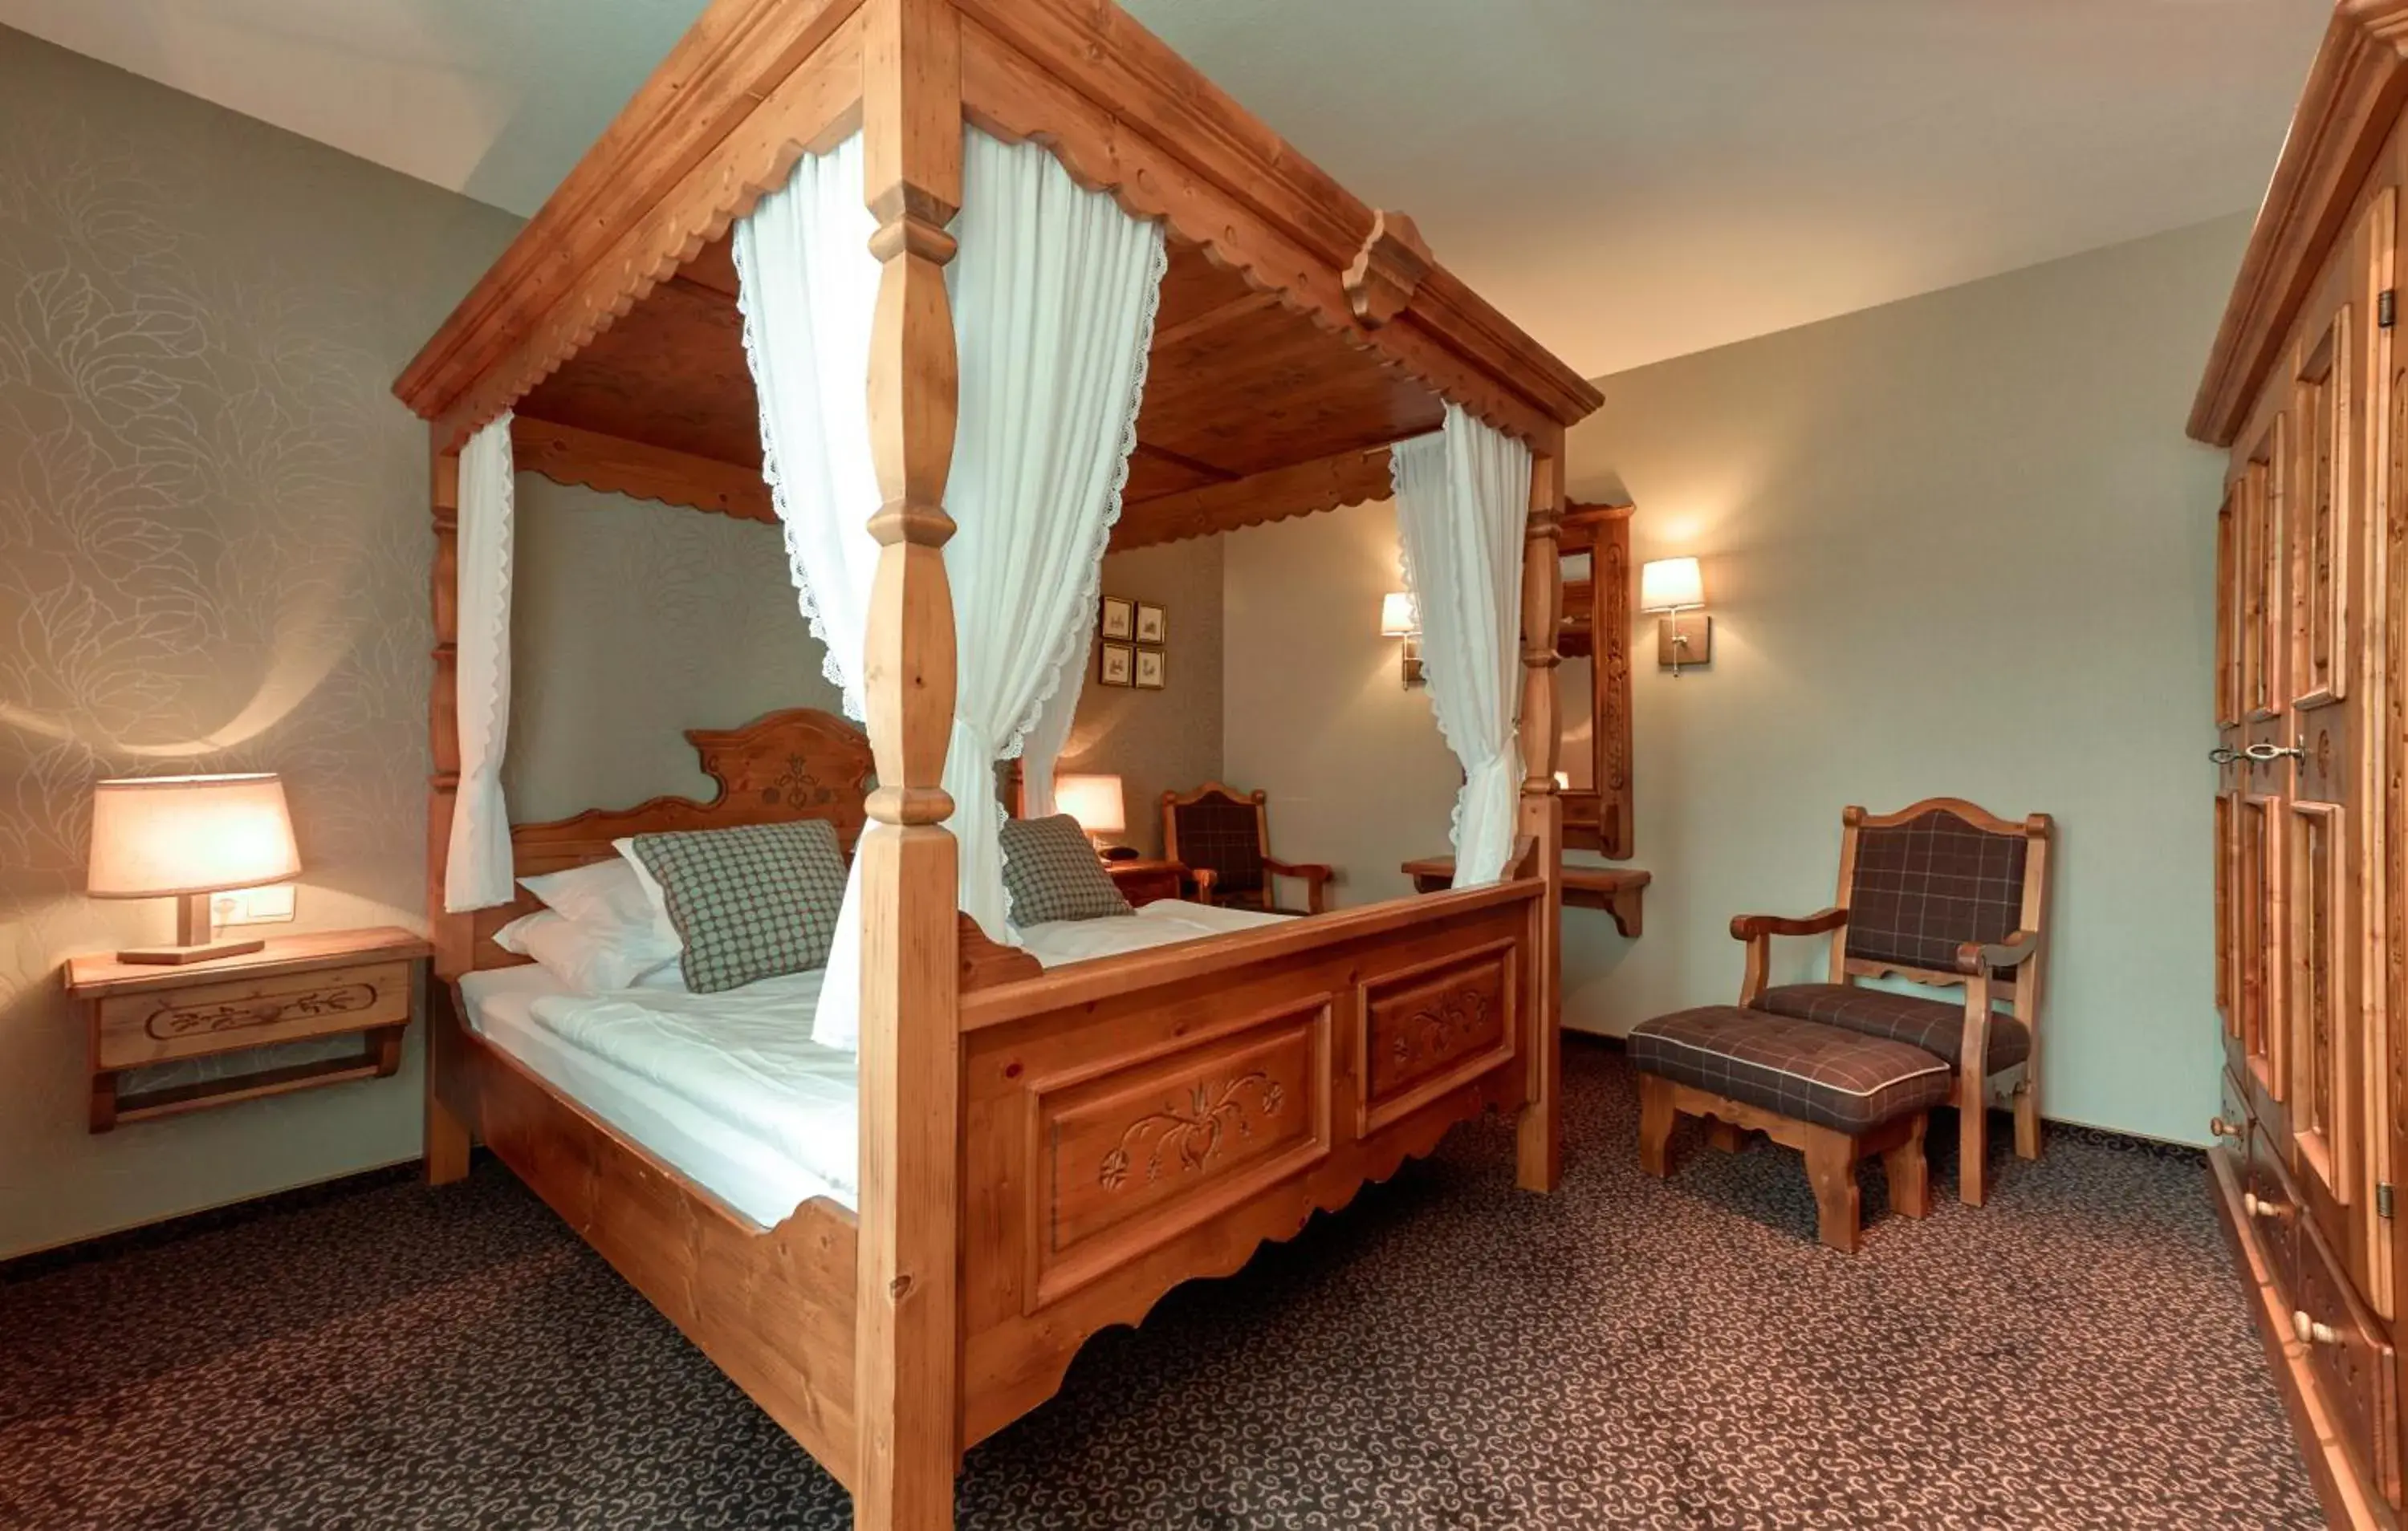 Bed, Room Photo in Hotel Bütgenbacher Hof